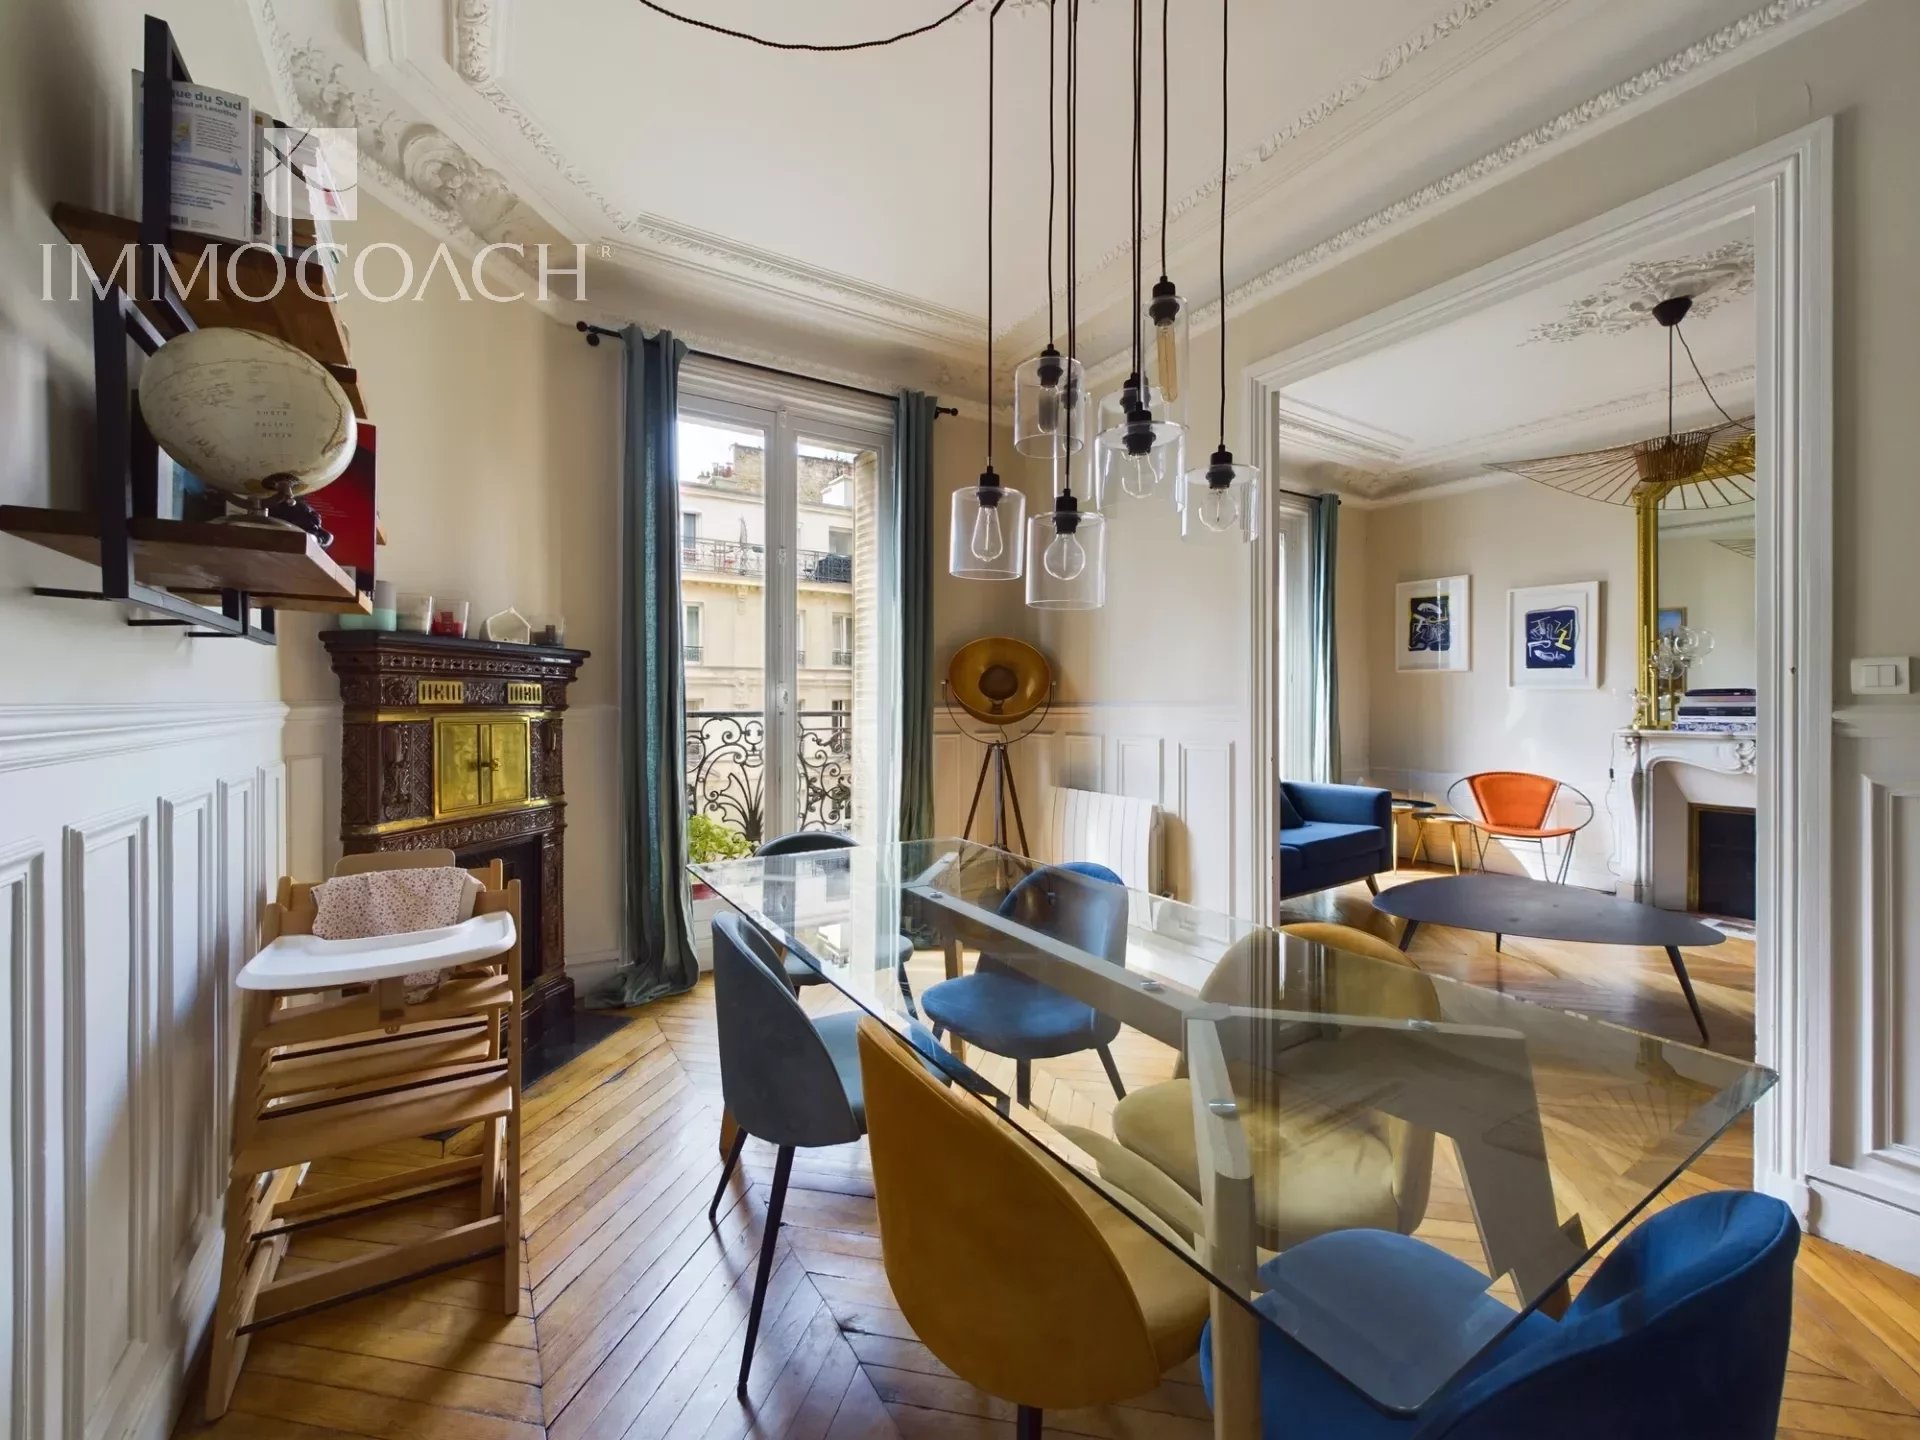 Vente Appartement 89m² 4 Pièces à Paris (75018) - Immocoach